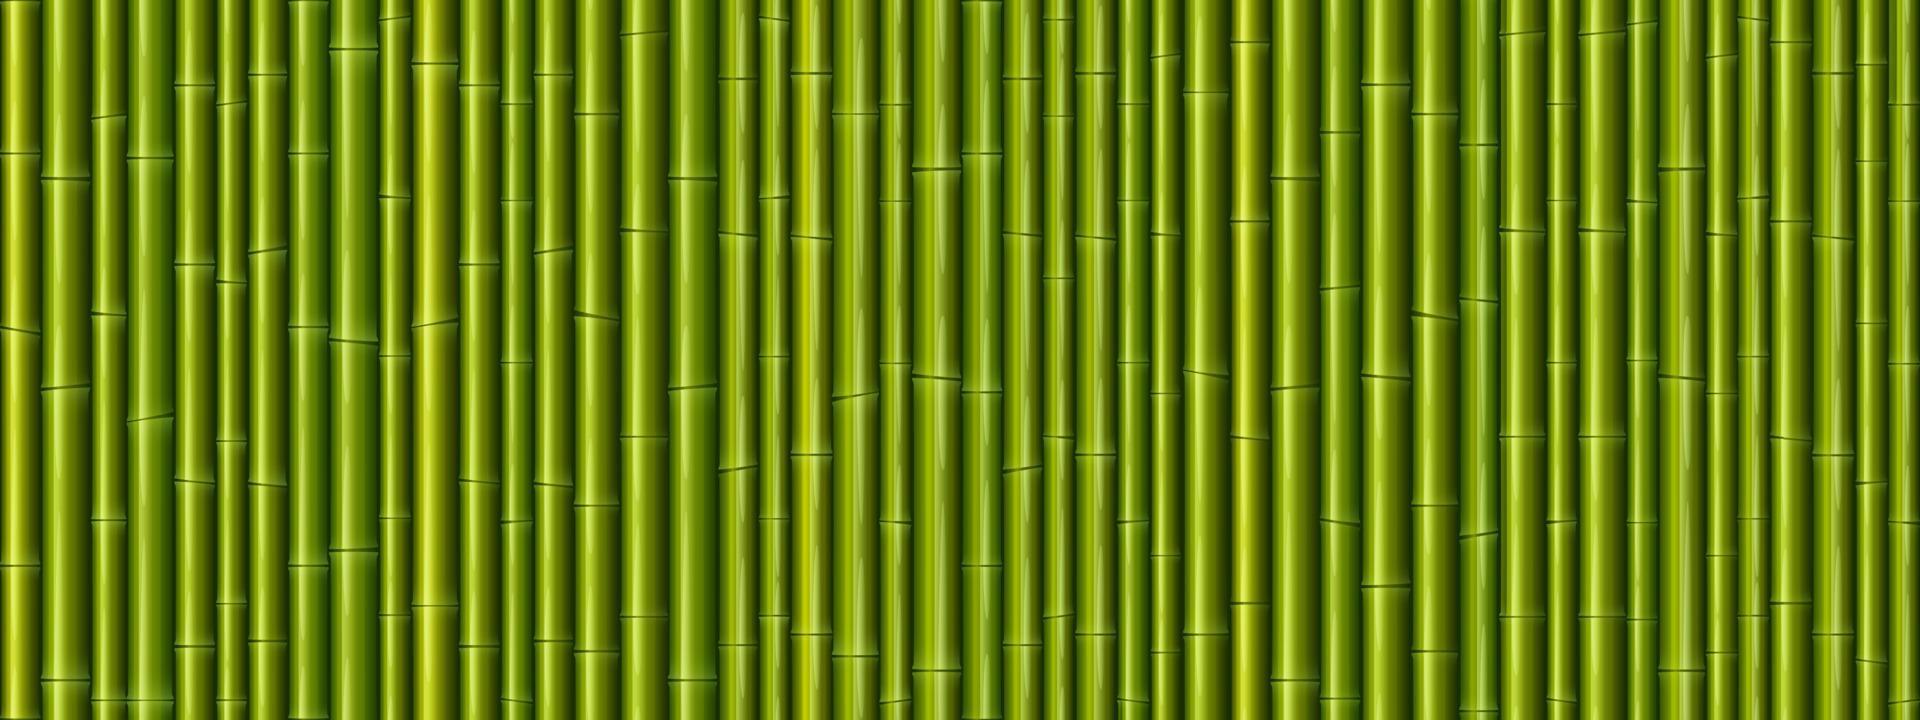 nahtloses muster der bambuswandbeschaffenheit vektor